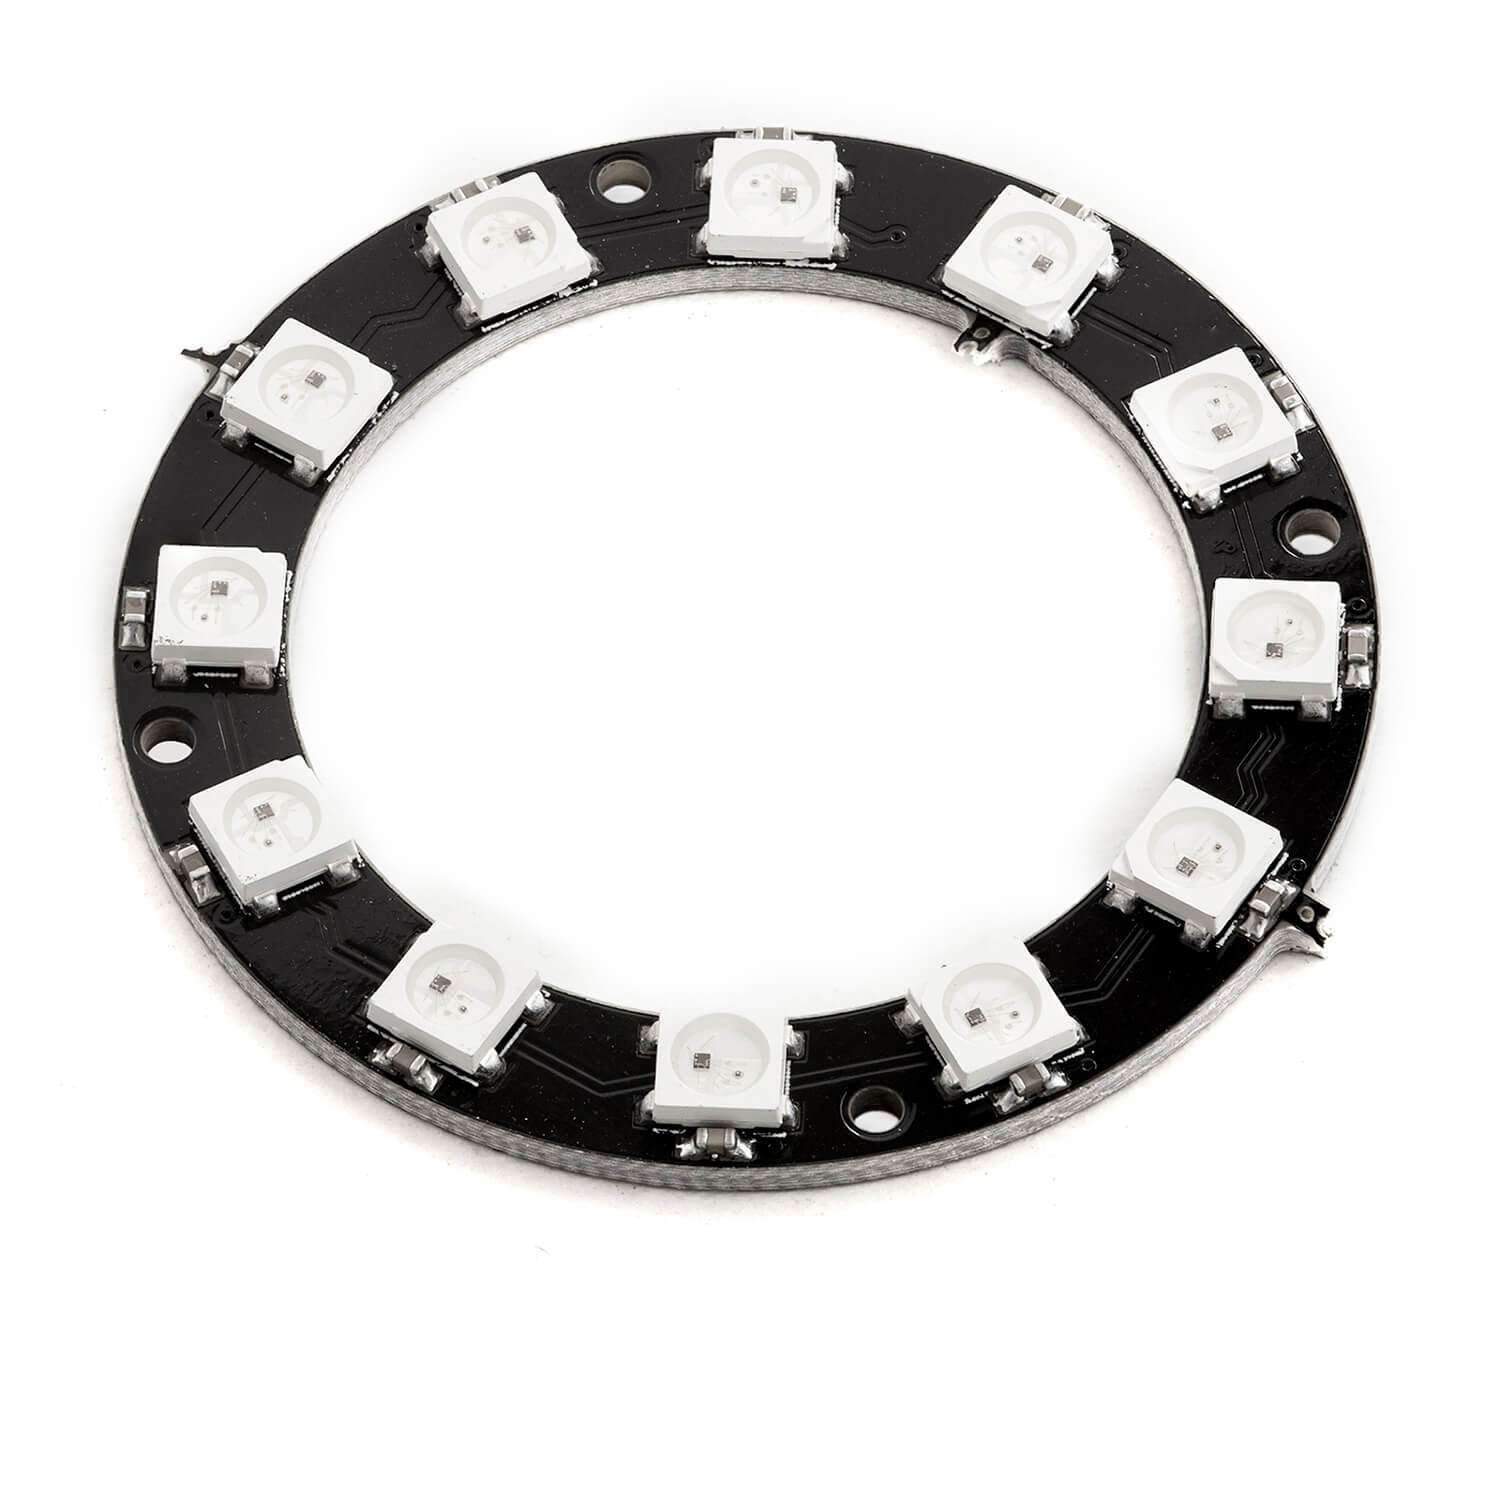 Bunter LED Würfel - LED Ring per Gyroskop und ESP32 steuern - AZ-Delivery